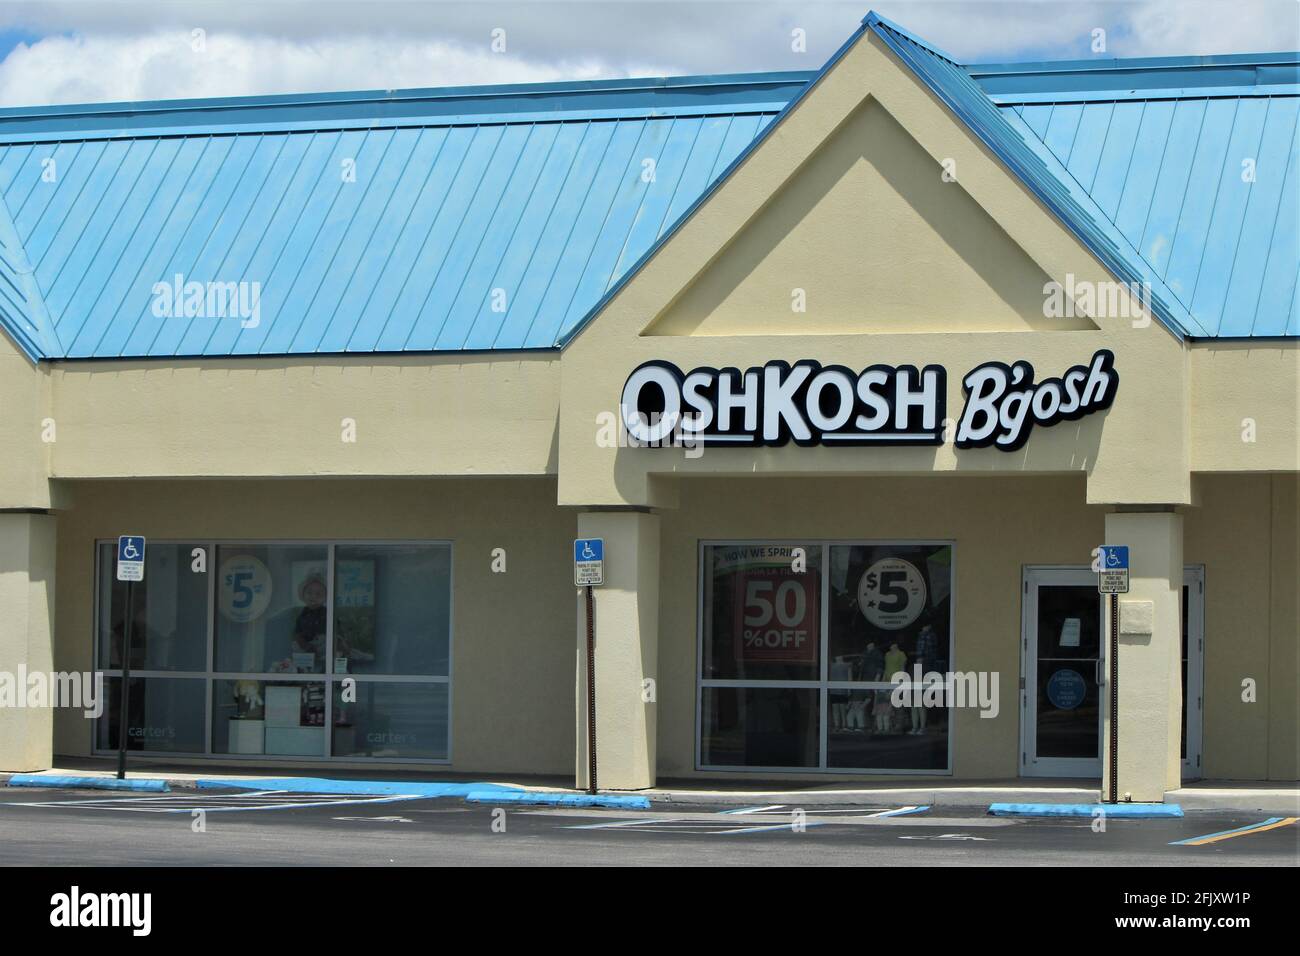 Kinderkleidergeschäft, Oshkosh B'gosh in Hialeah, FL. Das Geschäft ist wegen COVID-19, einer Coronavirus-Pandemie nach der Bestellung des Aufenthalts zu Hause, geschlossen. Stockfoto